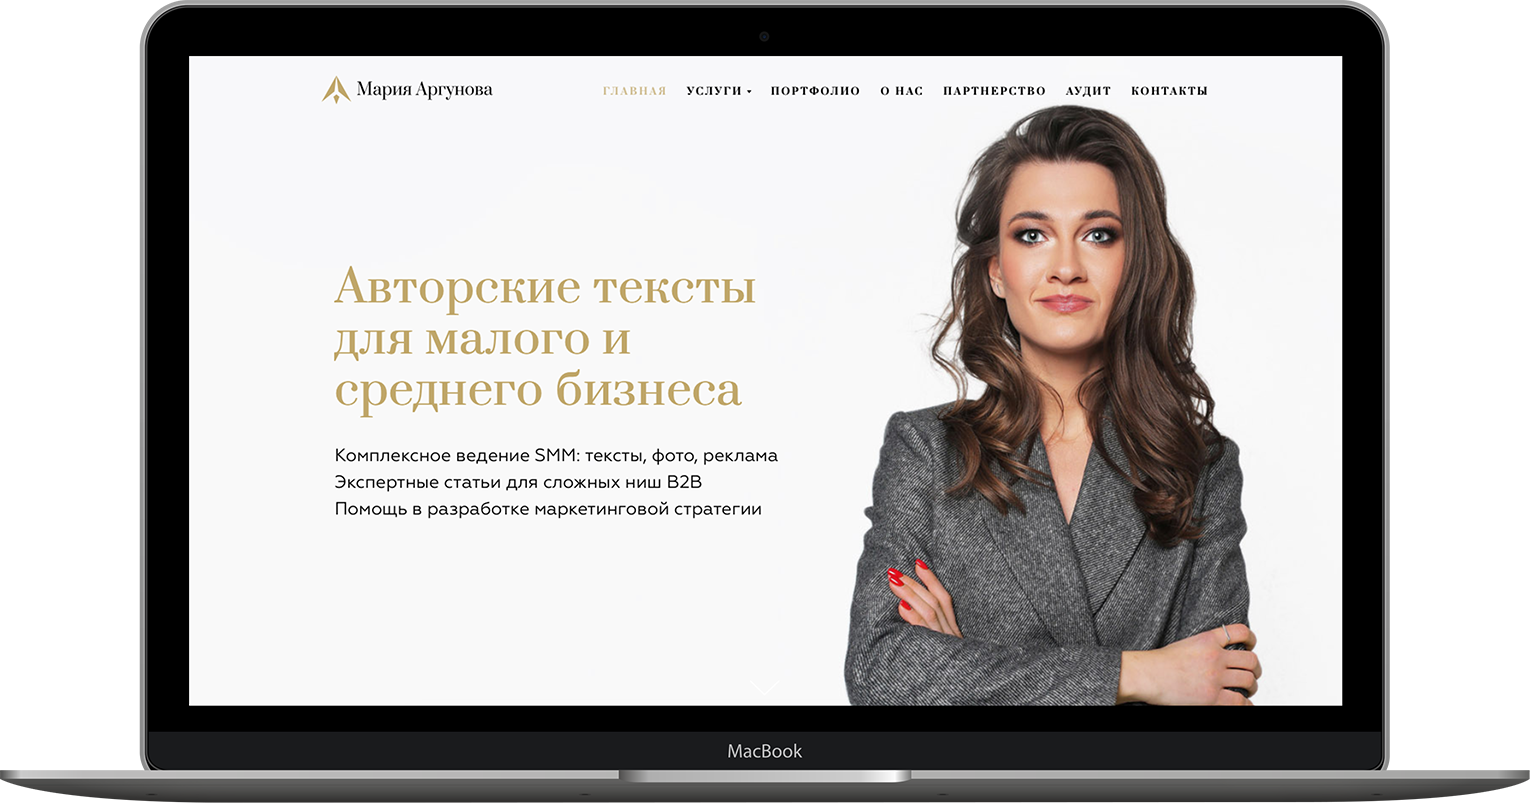 Кейс по упаковке сайта и запуску рекламы для агентства копирайтинга Argunova